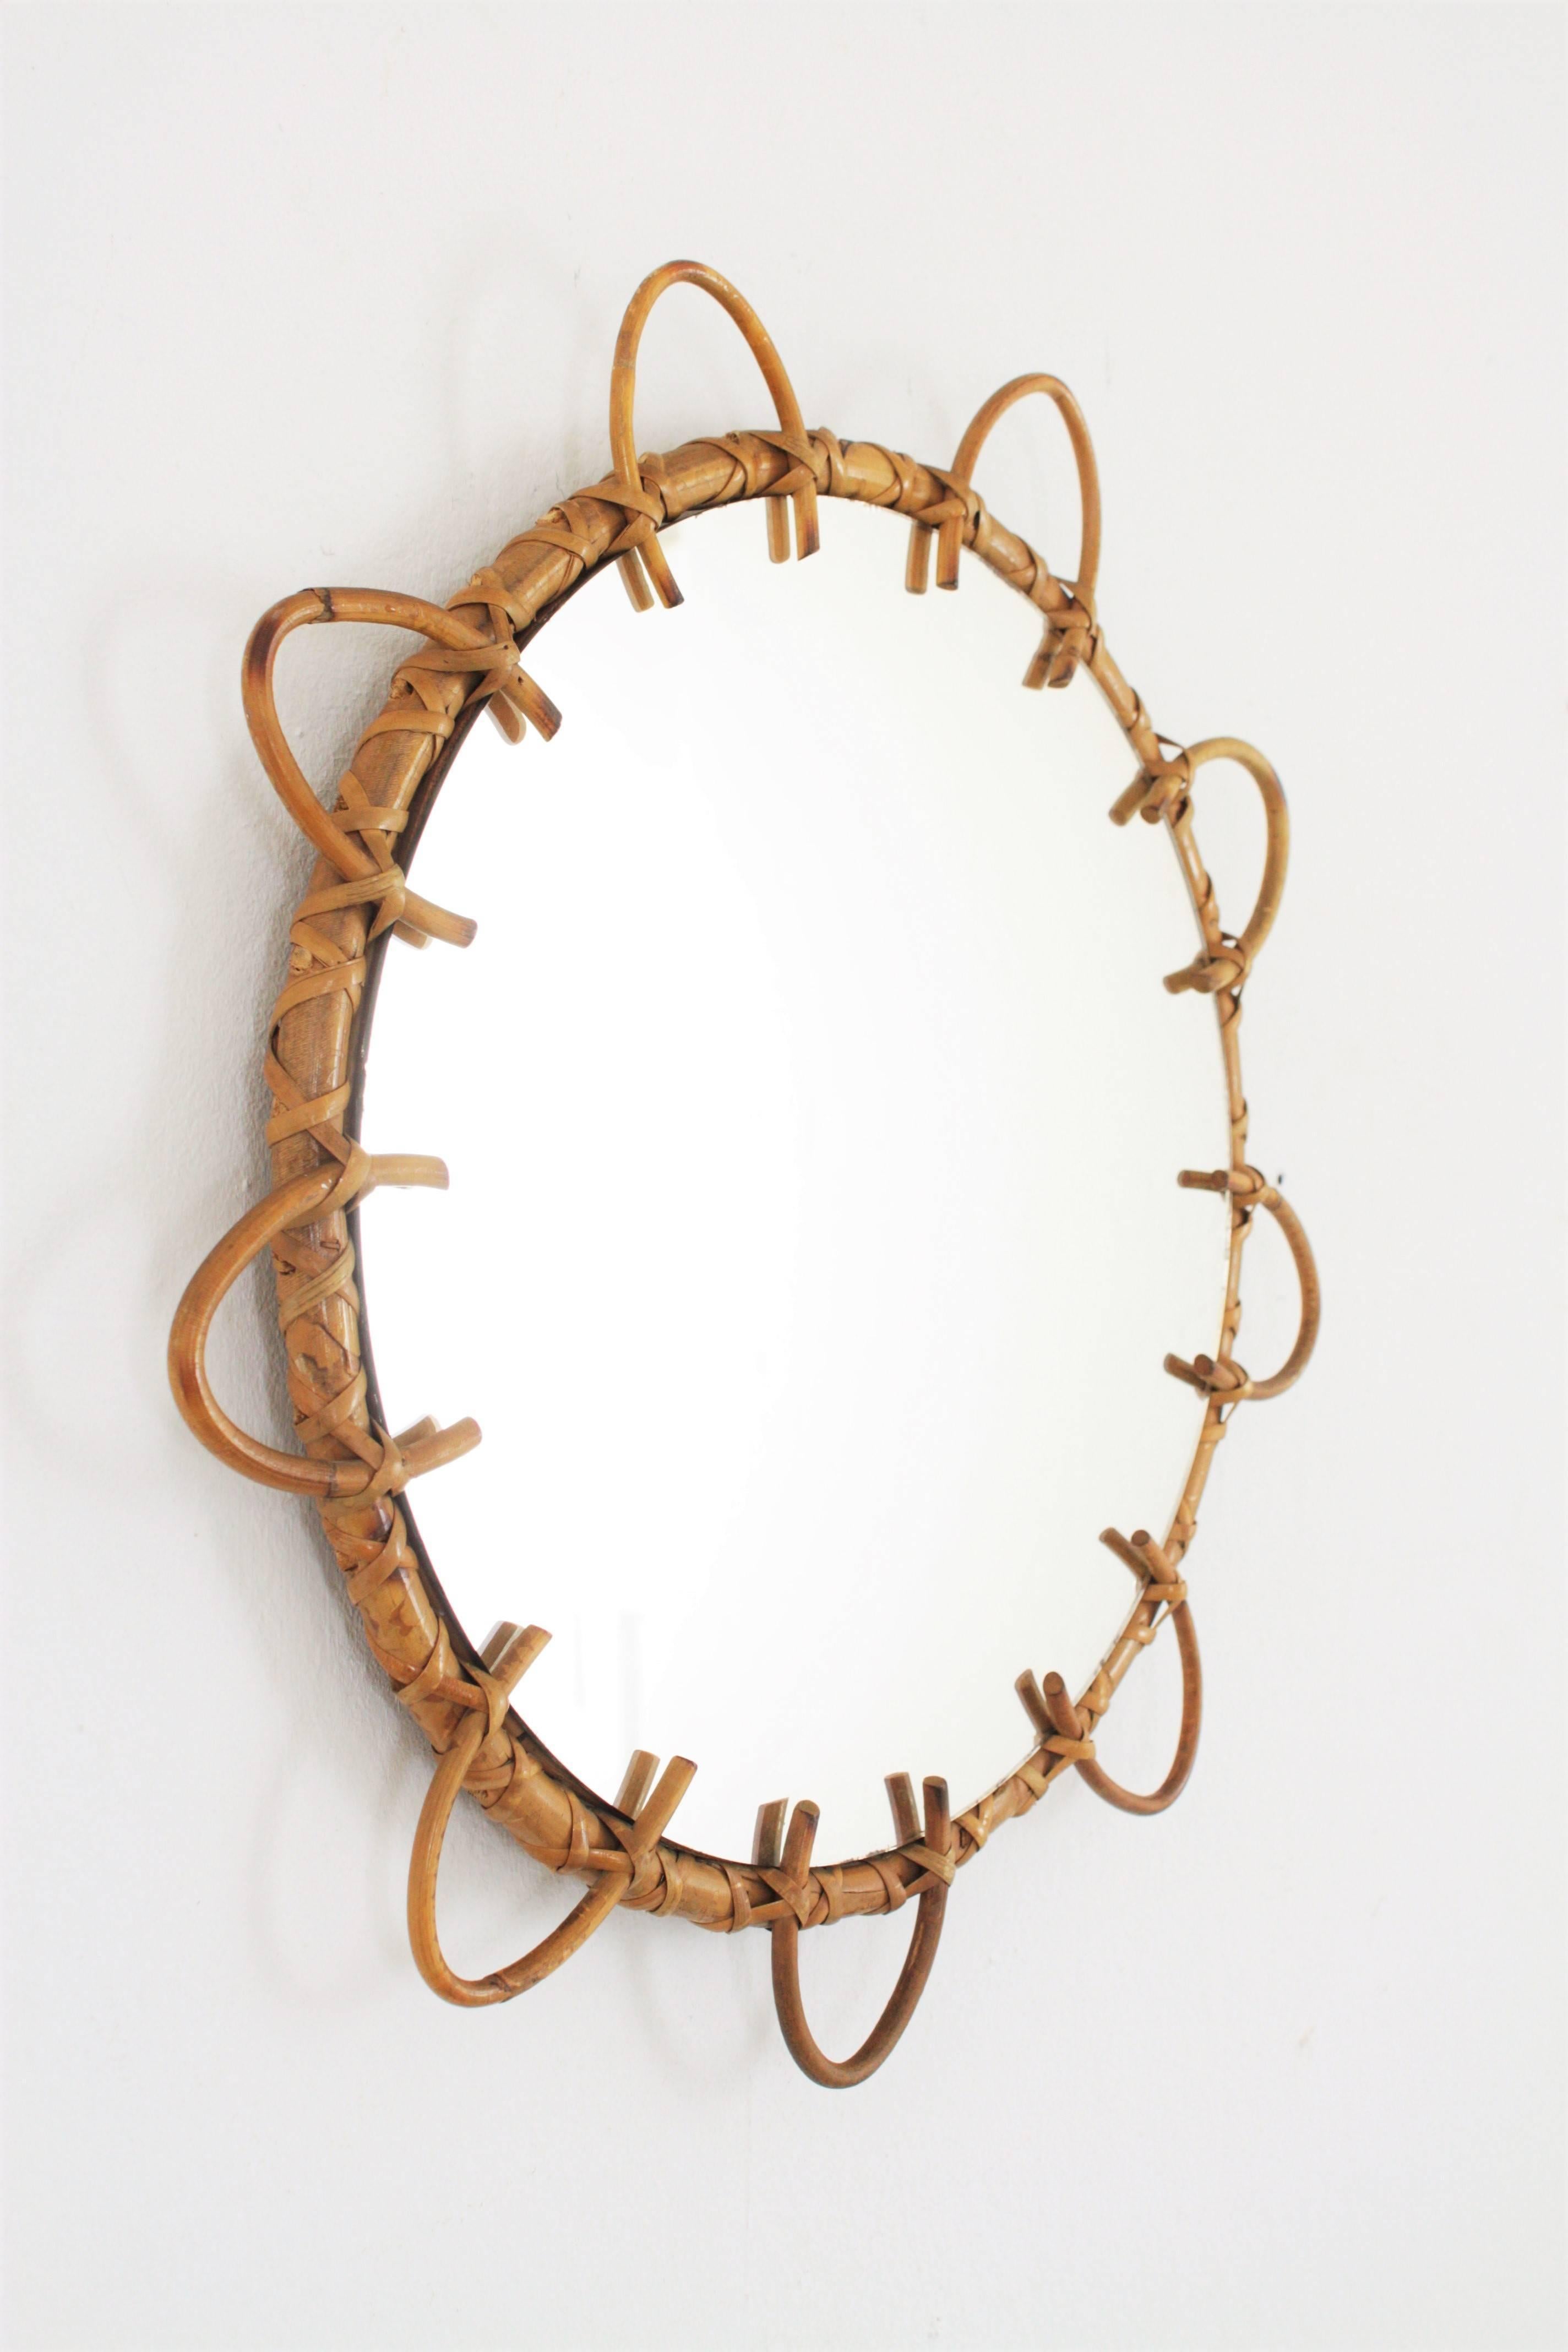 Ein schöner blumenförmiger Spiegel, handgefertigt aus Bambus und Rattan, Spanien, 1960er Jahre.
Dieser runde Spiegel wird von einem Bambusring umrahmt, der von Rattanblättern akzentuiert wird. Es hat den ganzen Geschmack der mediterranen Küste Stil